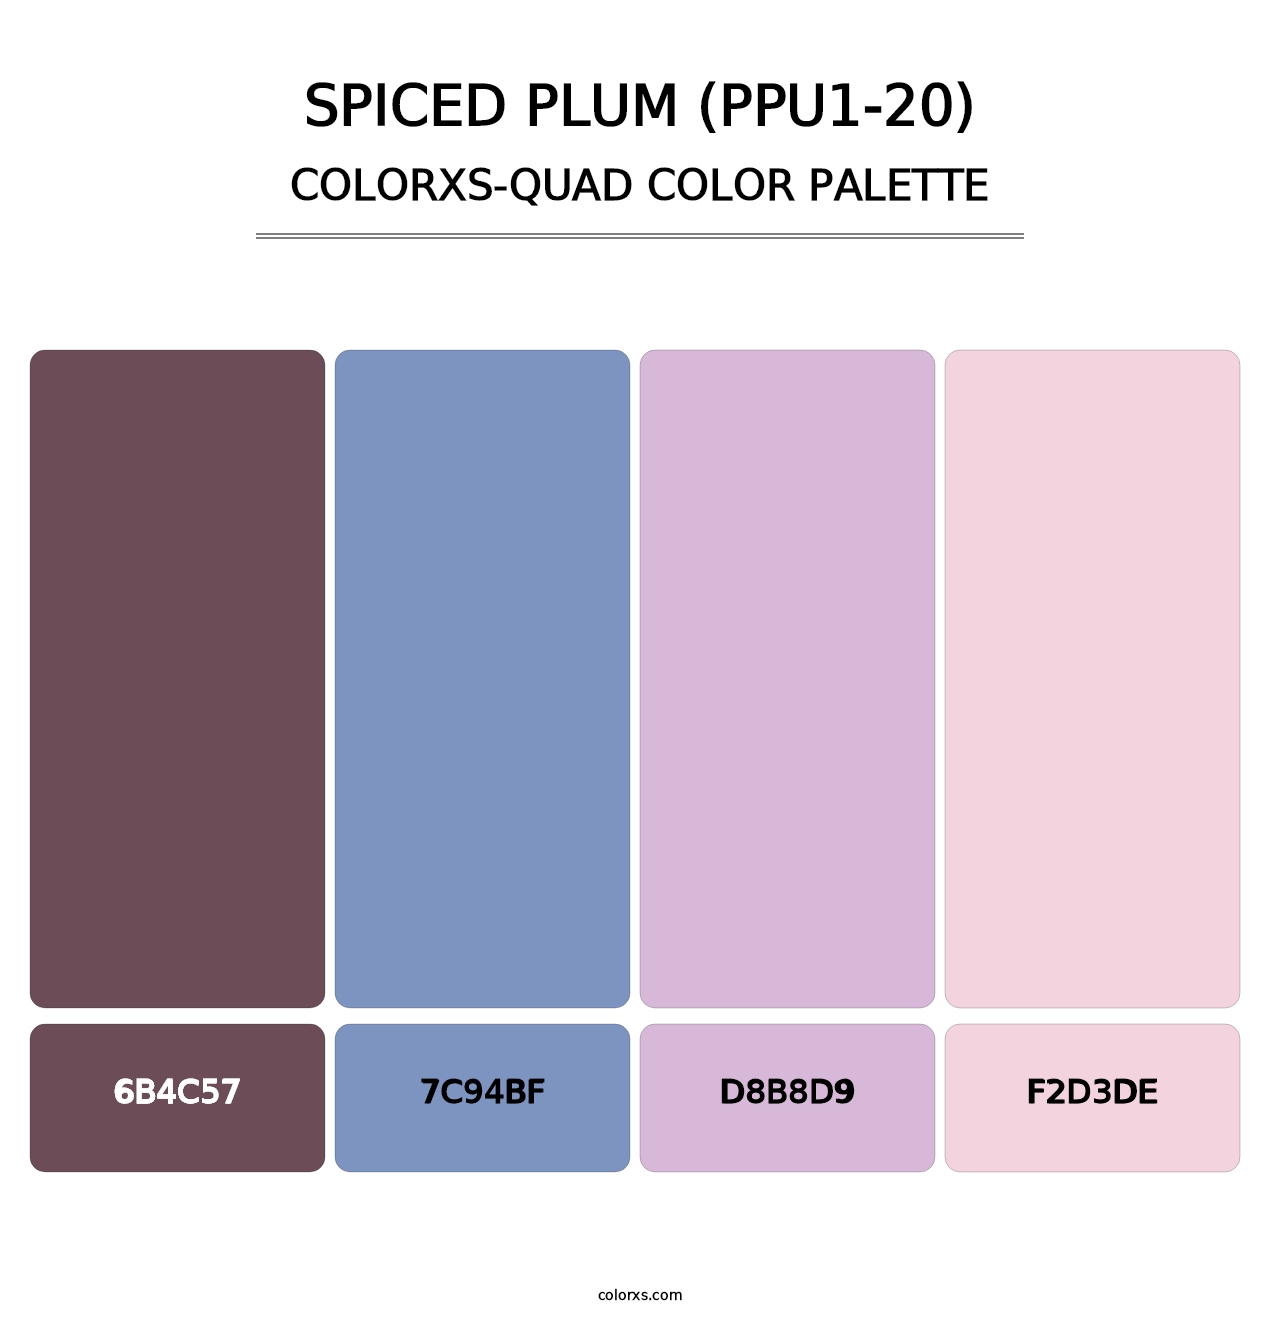 Spiced Plum (PPU1-20) - Colorxs Quad Palette